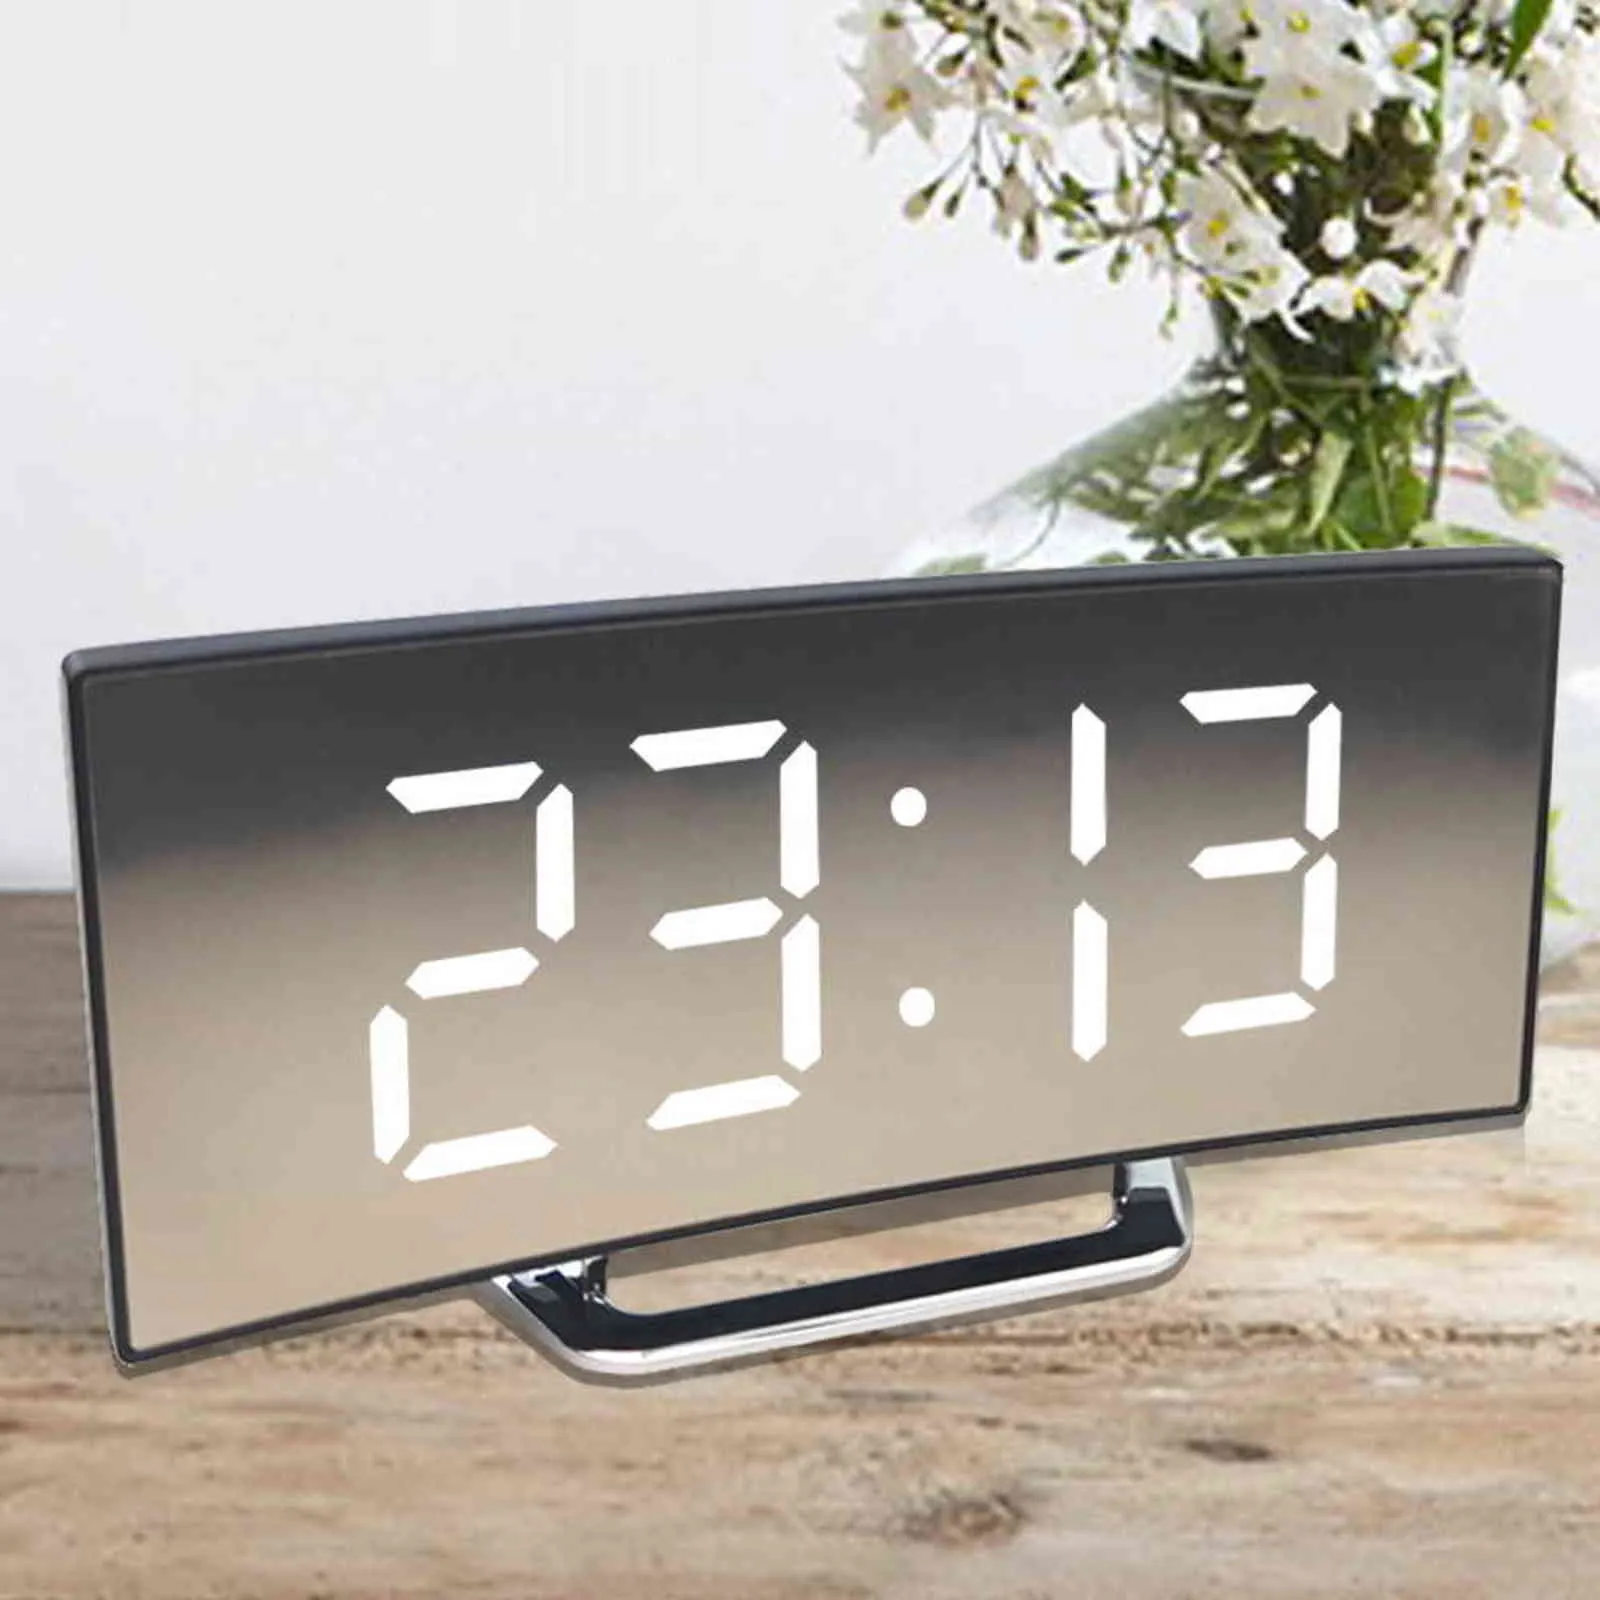 デジタルアラーム時計デスクテーブルクロックカーブLEDスクリーンアラーム時計キッドベッドルームの温度スヌーズ機能ホームの装飾腕時計211111